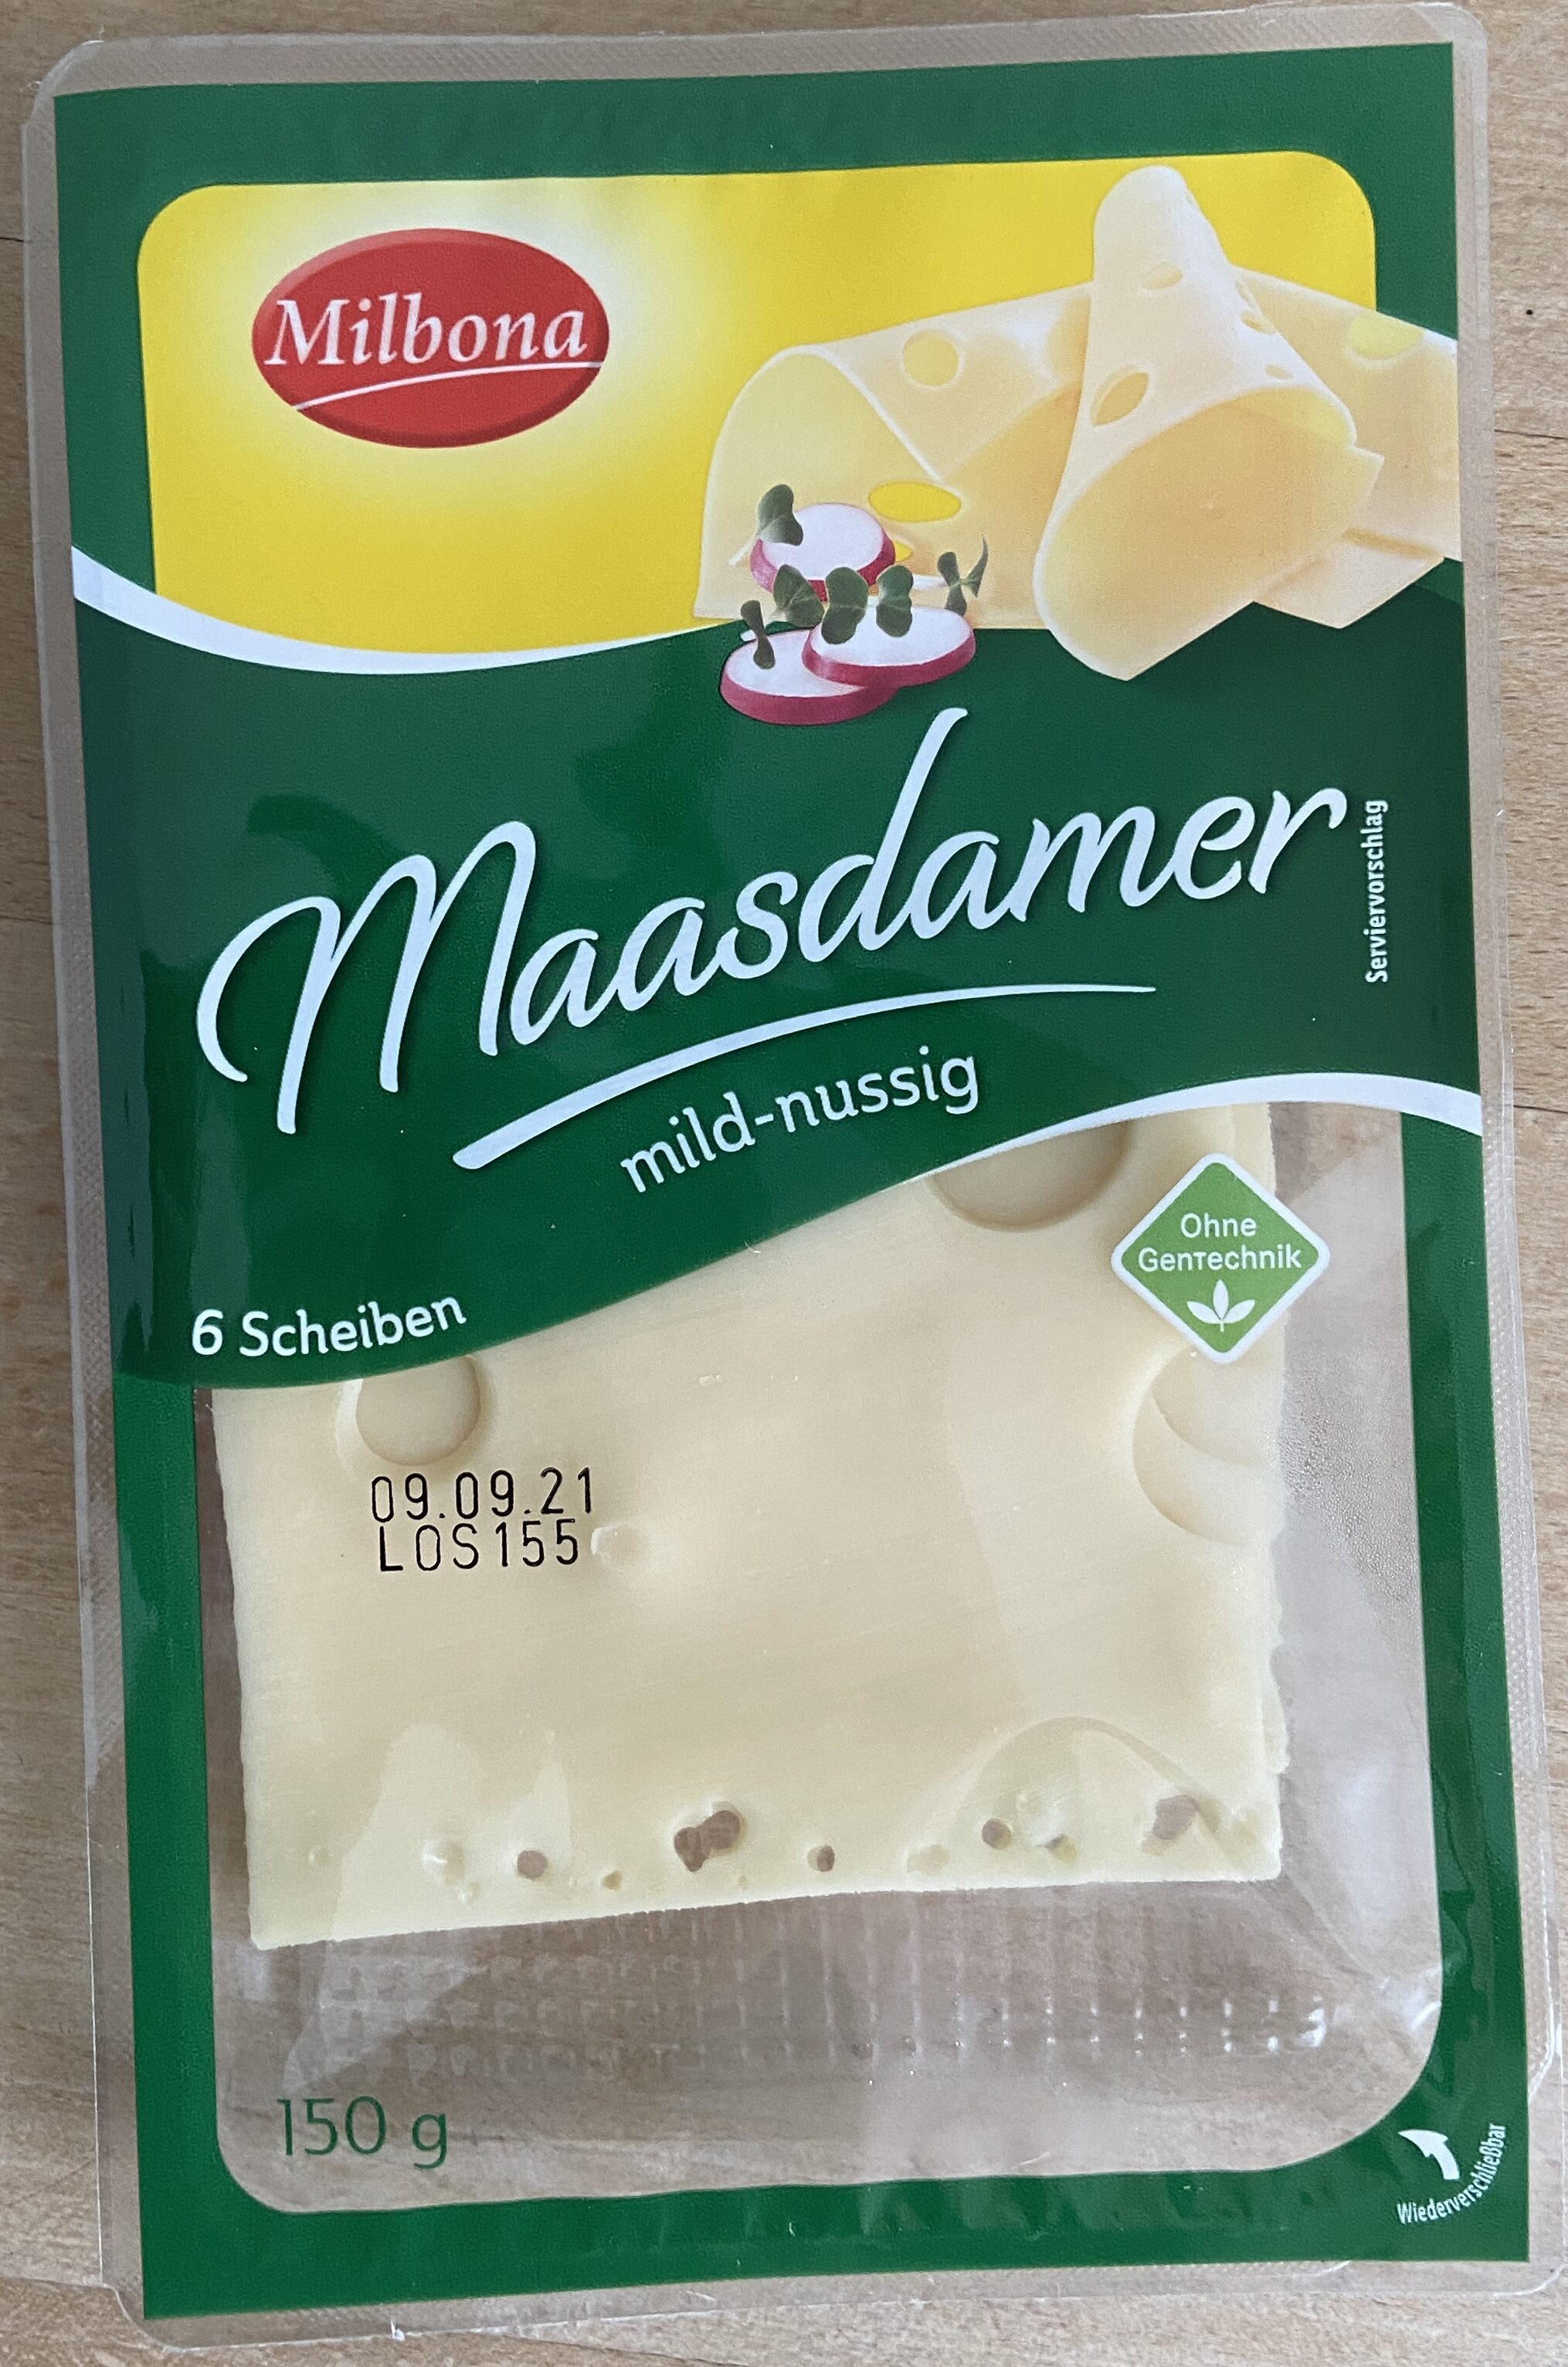 Maasdamer - Product - de